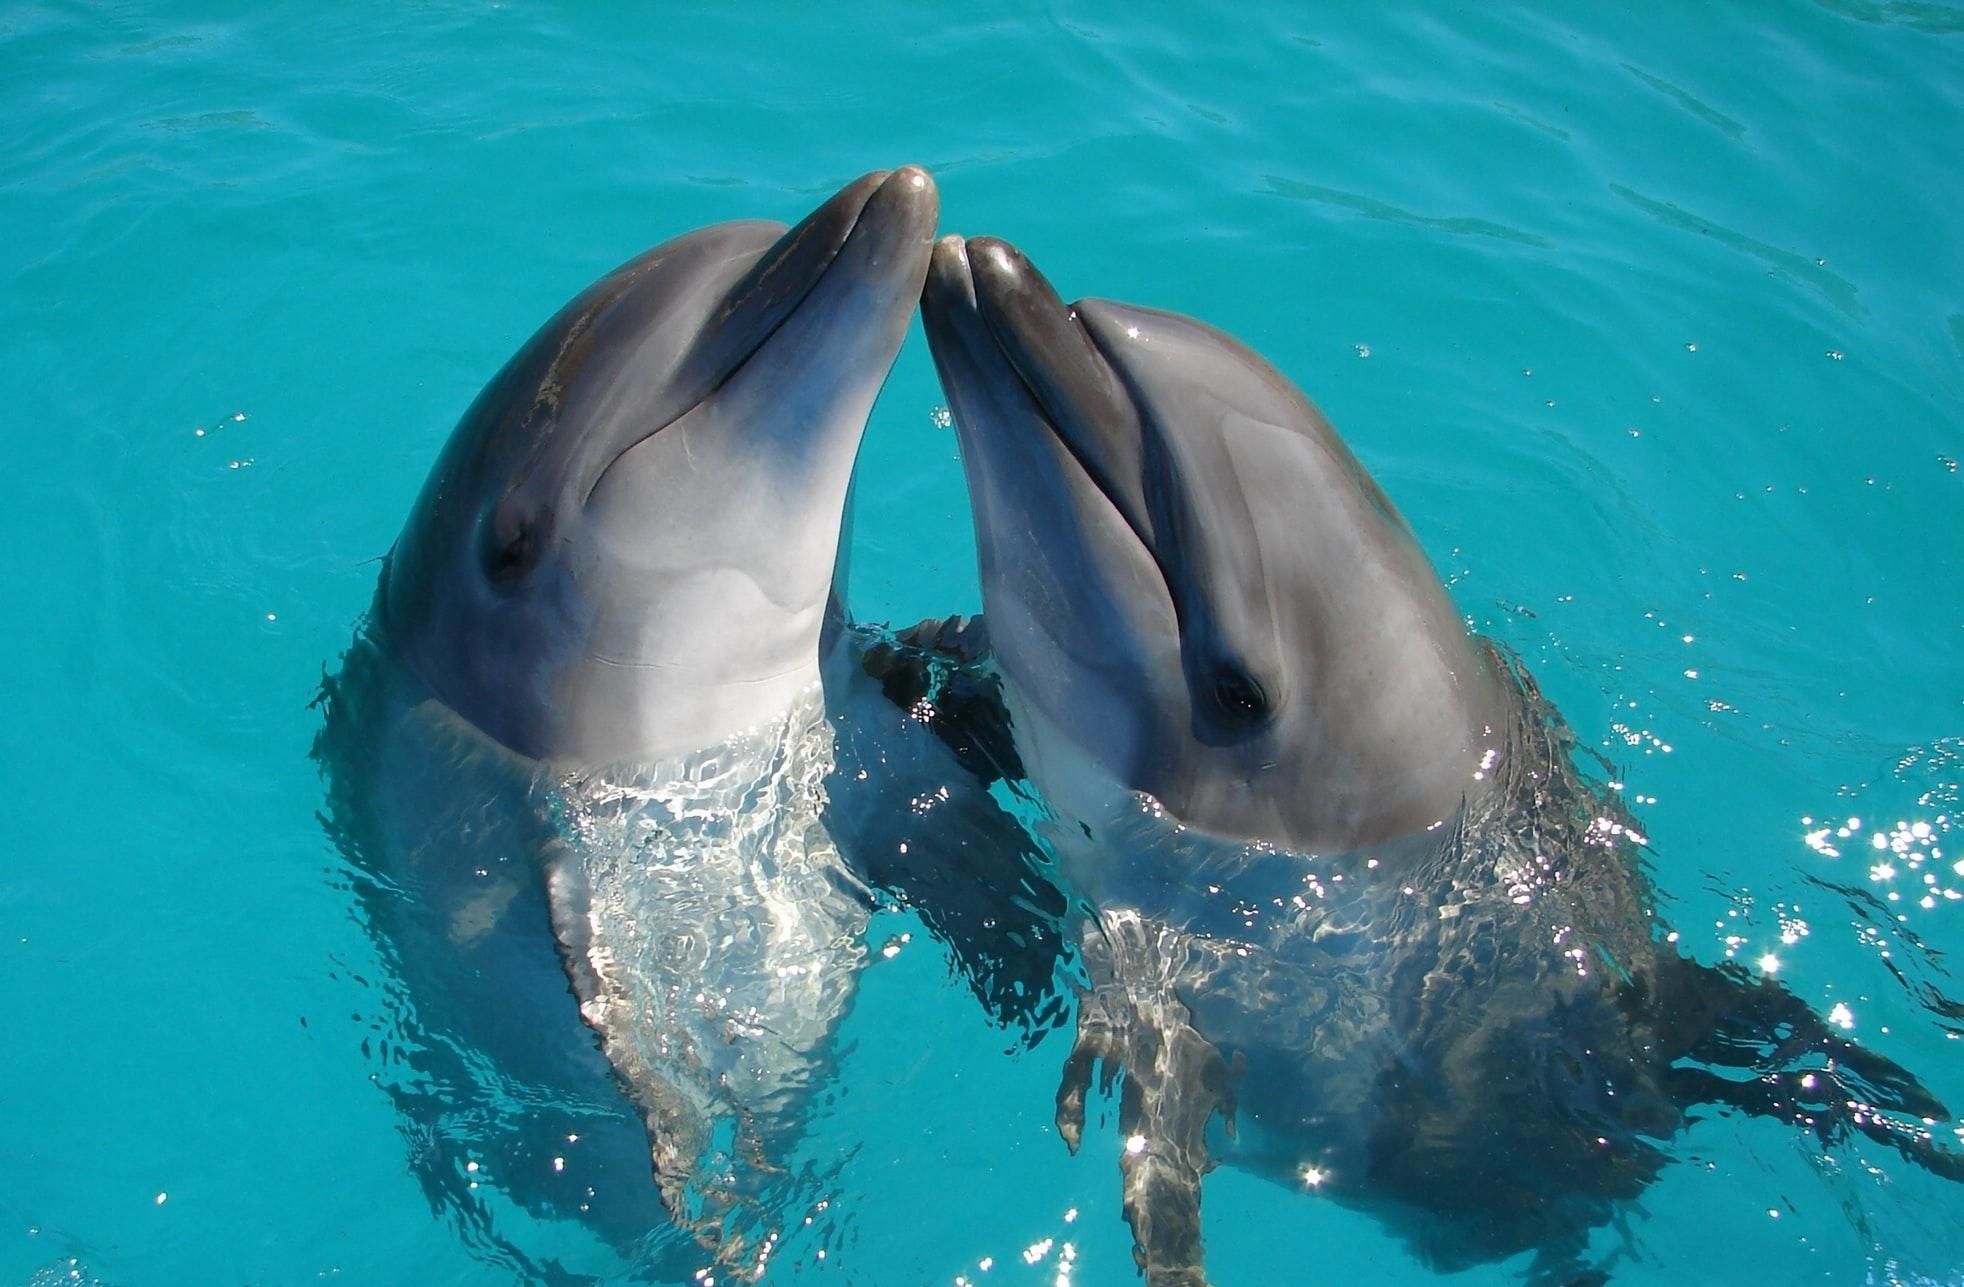 Всемирный день китов и дельфинов: интересные факты об этих животных